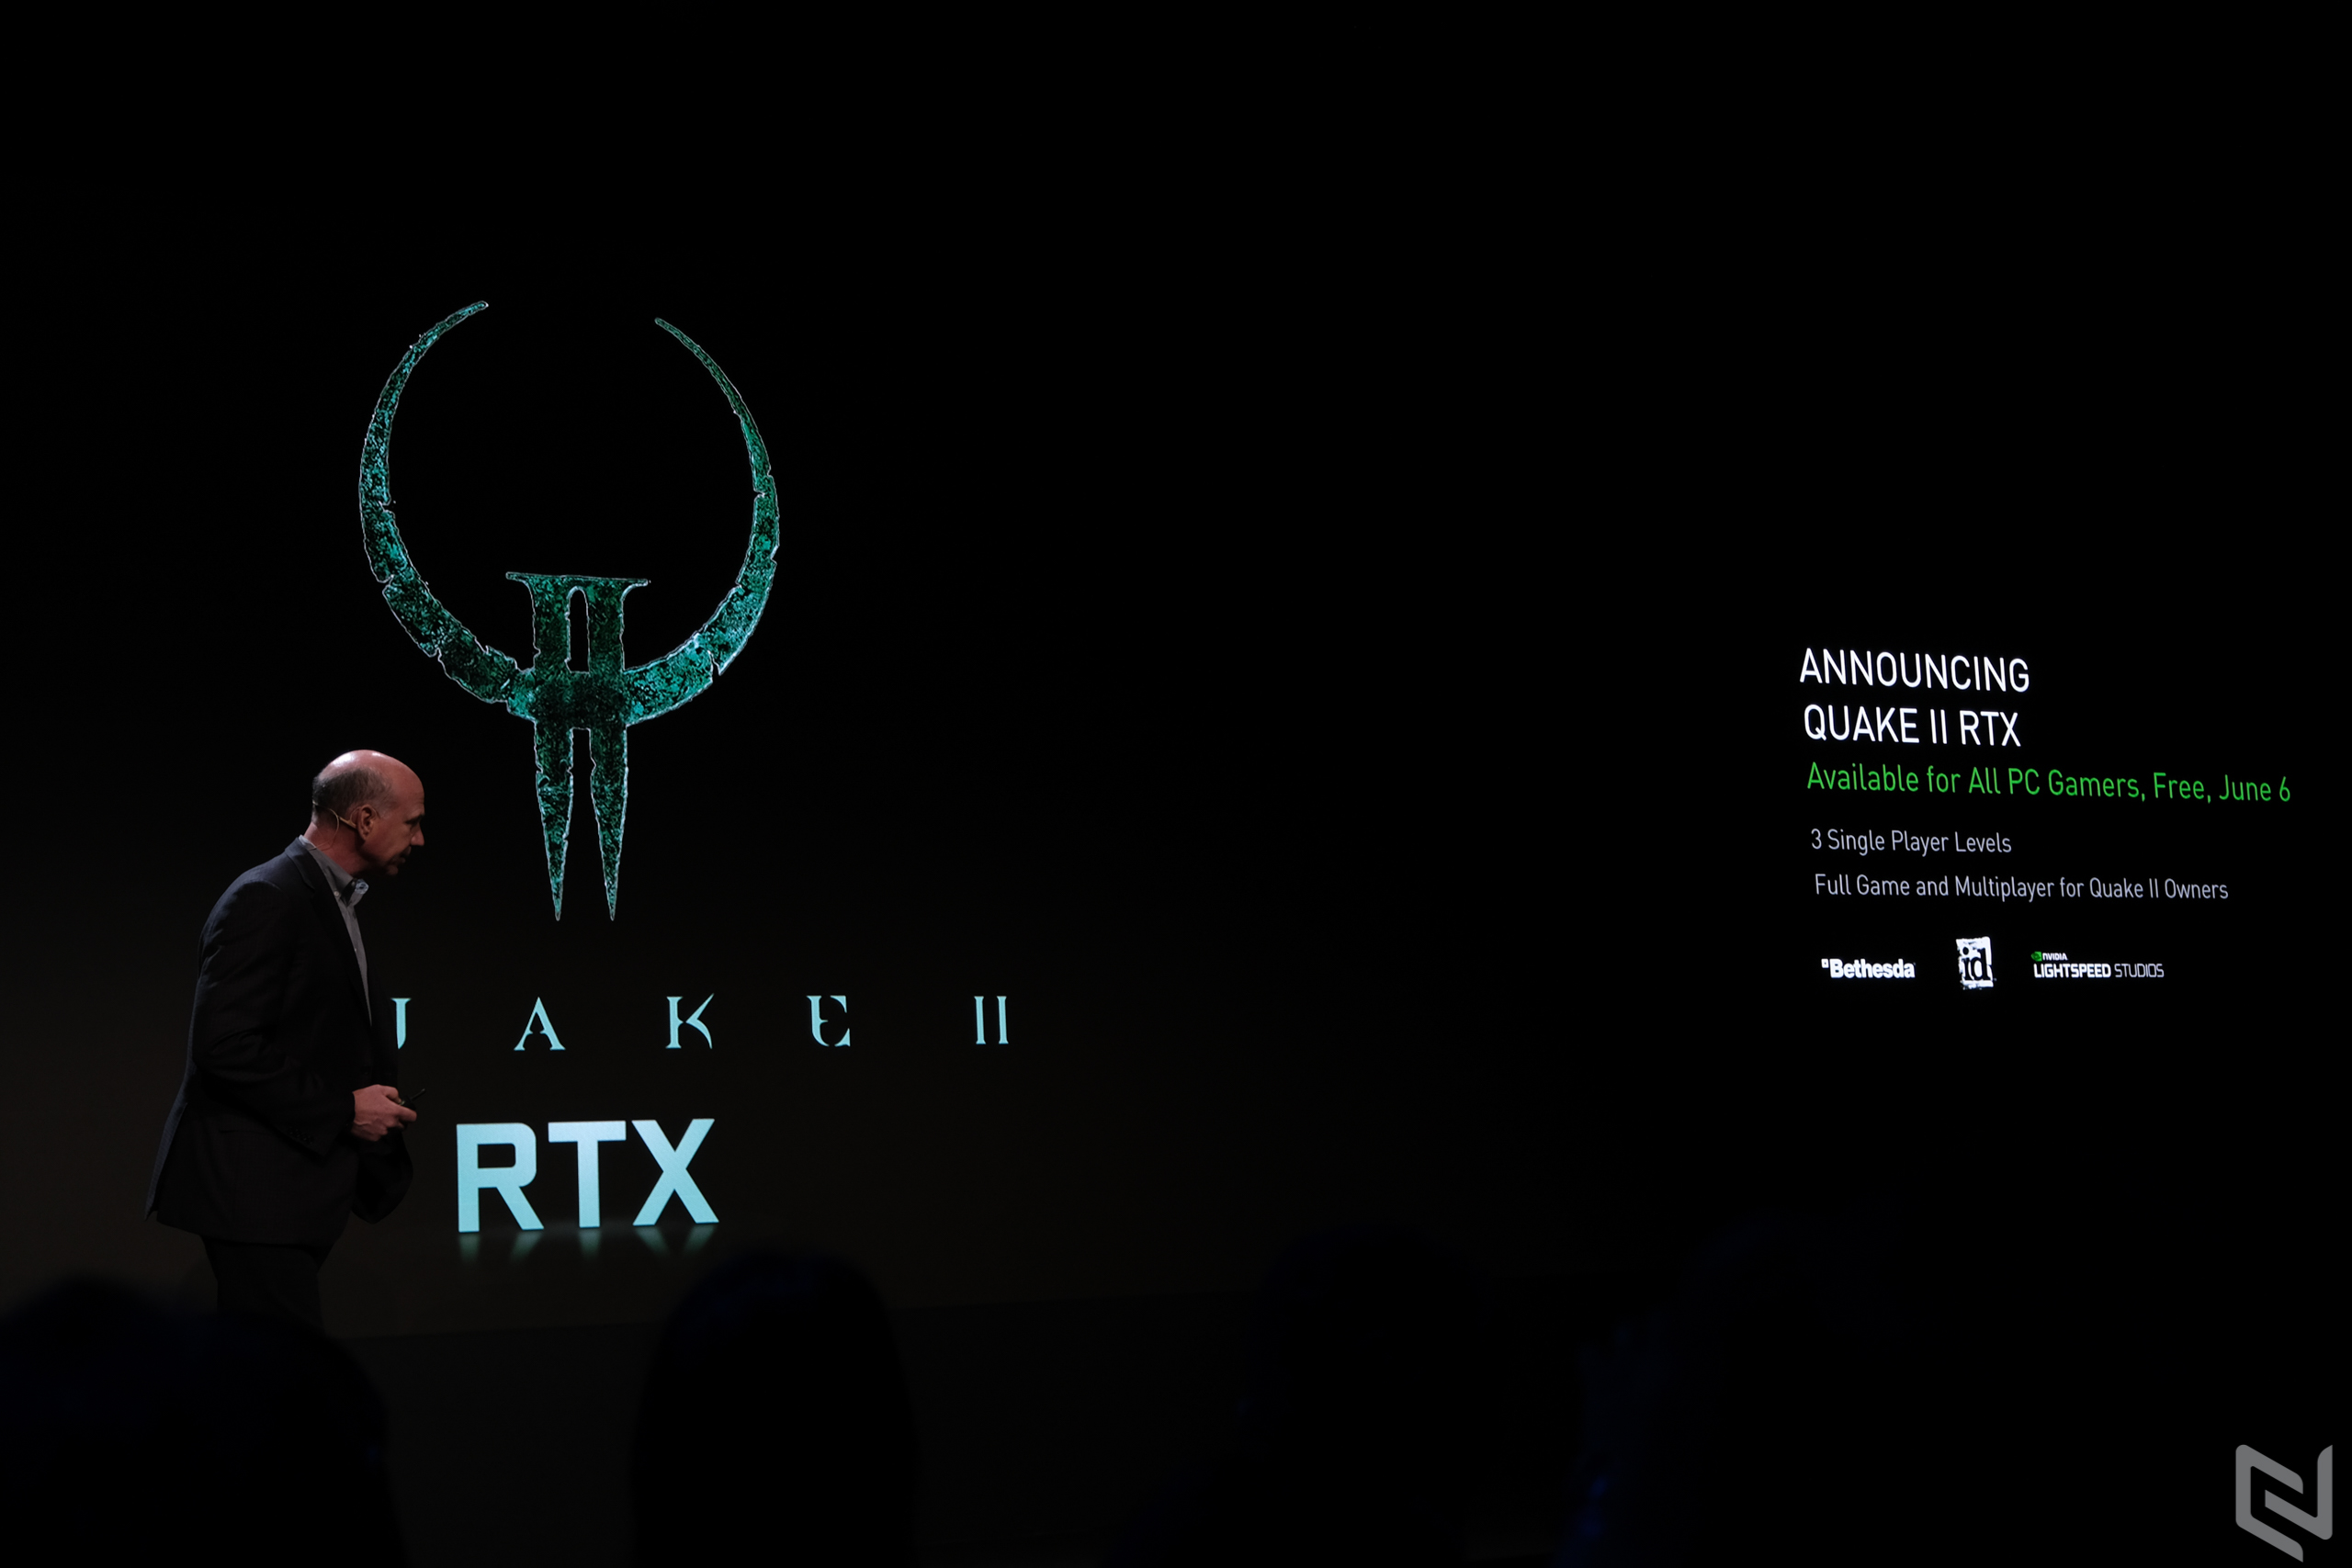 NVIDIA tại Computex 2019: Quake II RTX phát hành vào 6/6, giới thiệu nền tảng NVIDIA Studio cho các nhà sáng tạo và nâng cấp Ray-Tracing